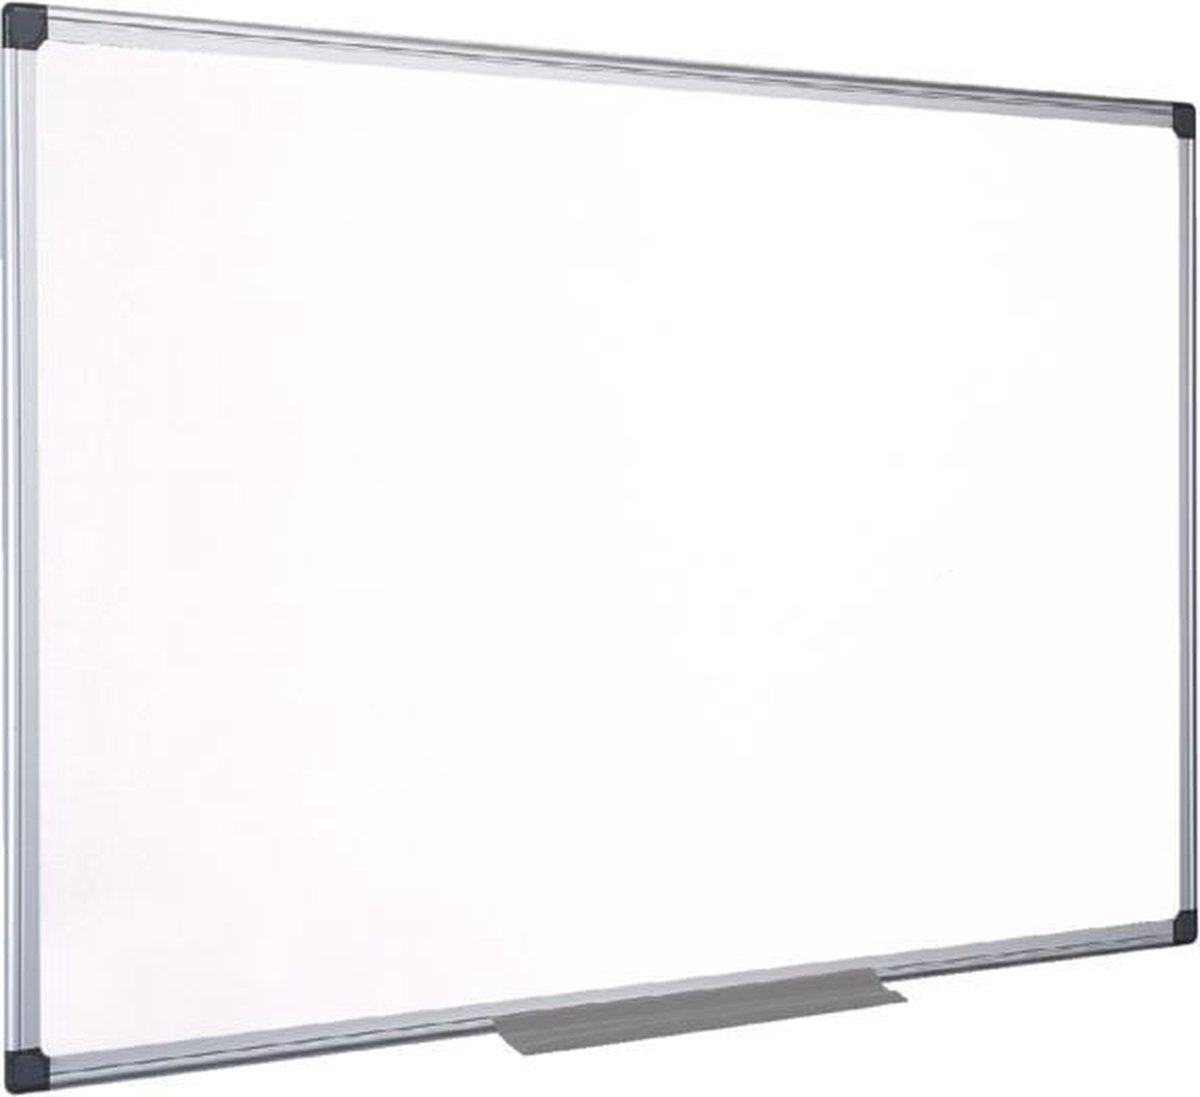 Magnetisch whiteboard